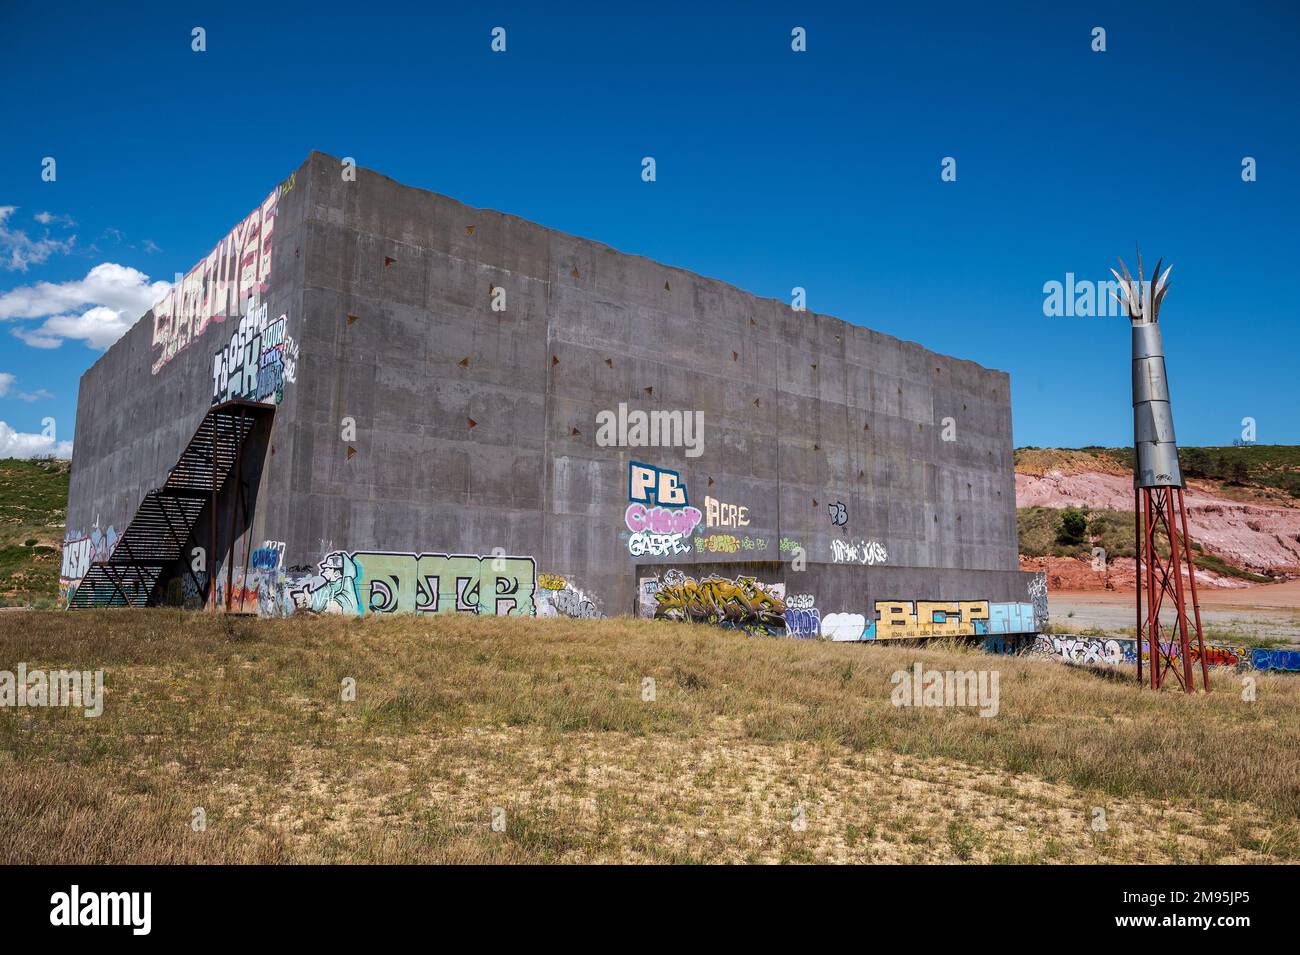 Vitrolles (Südostfrankreich): Das Stadion, ein von Rudy Ricciotti entworfener, betonschwarzer Würfel, ehemaliger Mehrzweckraum, der jetzt nicht mehr genutzt wird. Gebaut auf einem Ersten Stockfoto